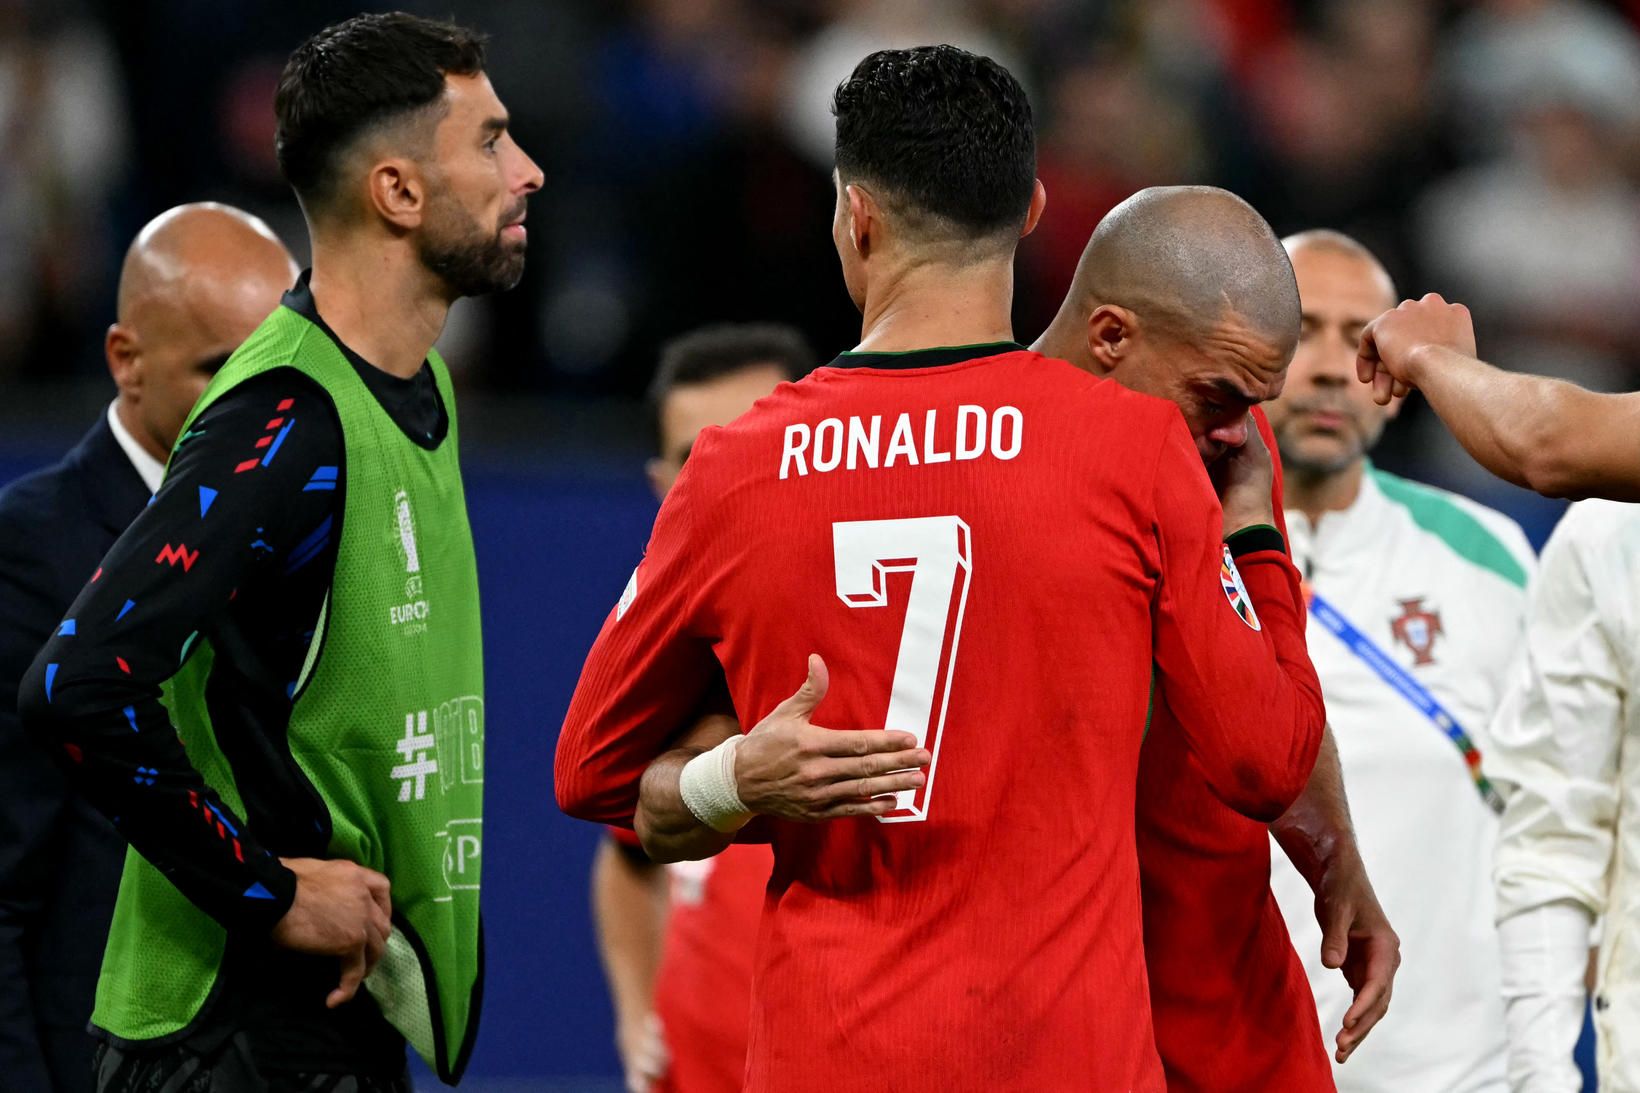 Cristiano Ronaldo og Pepe að knúsast eftir leikinn í gær.